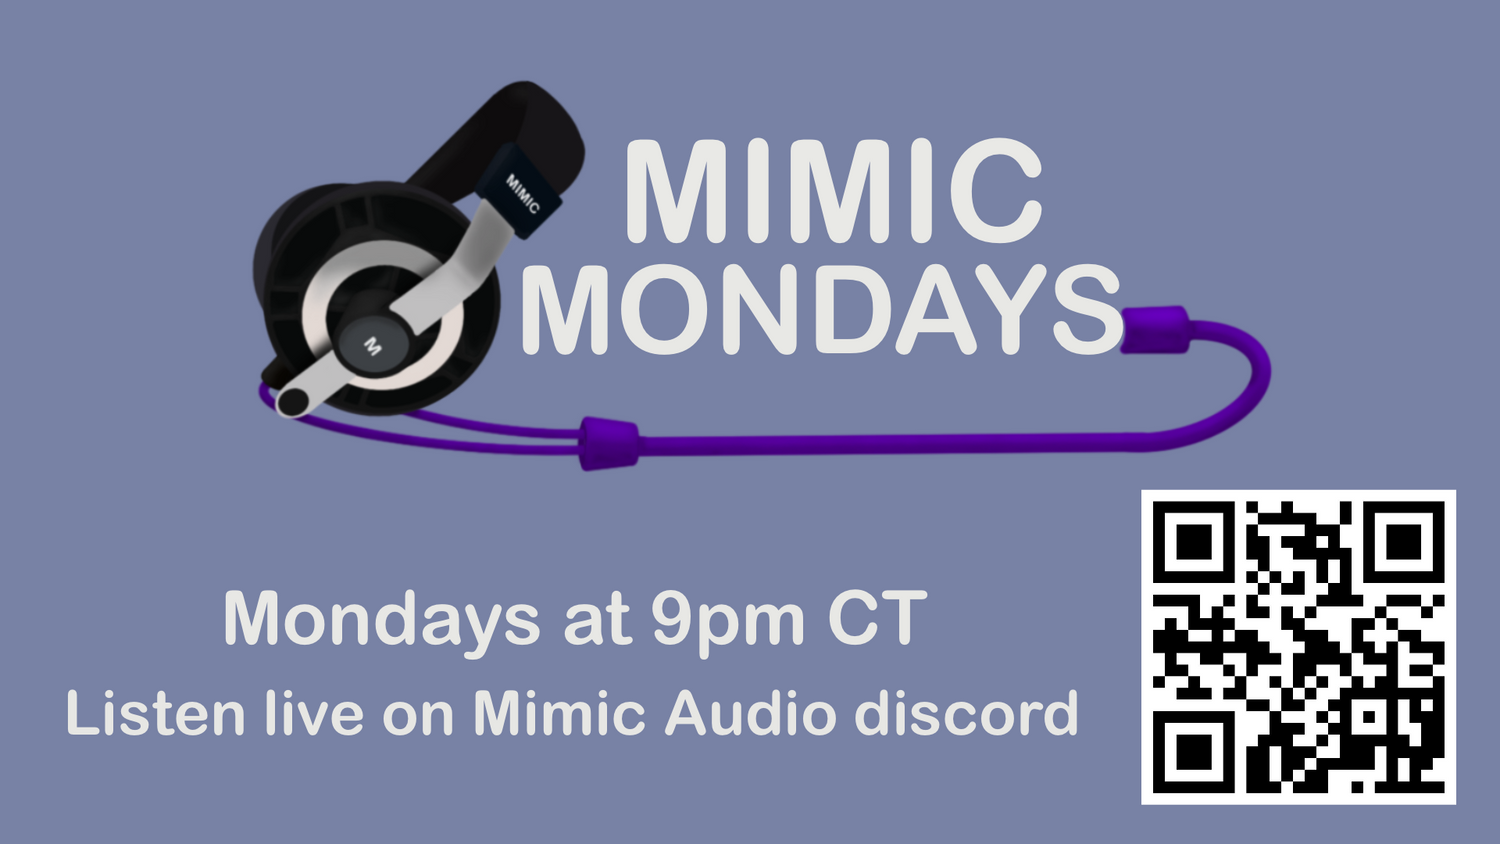 Mimic Mondays Ep. 5 is now live!